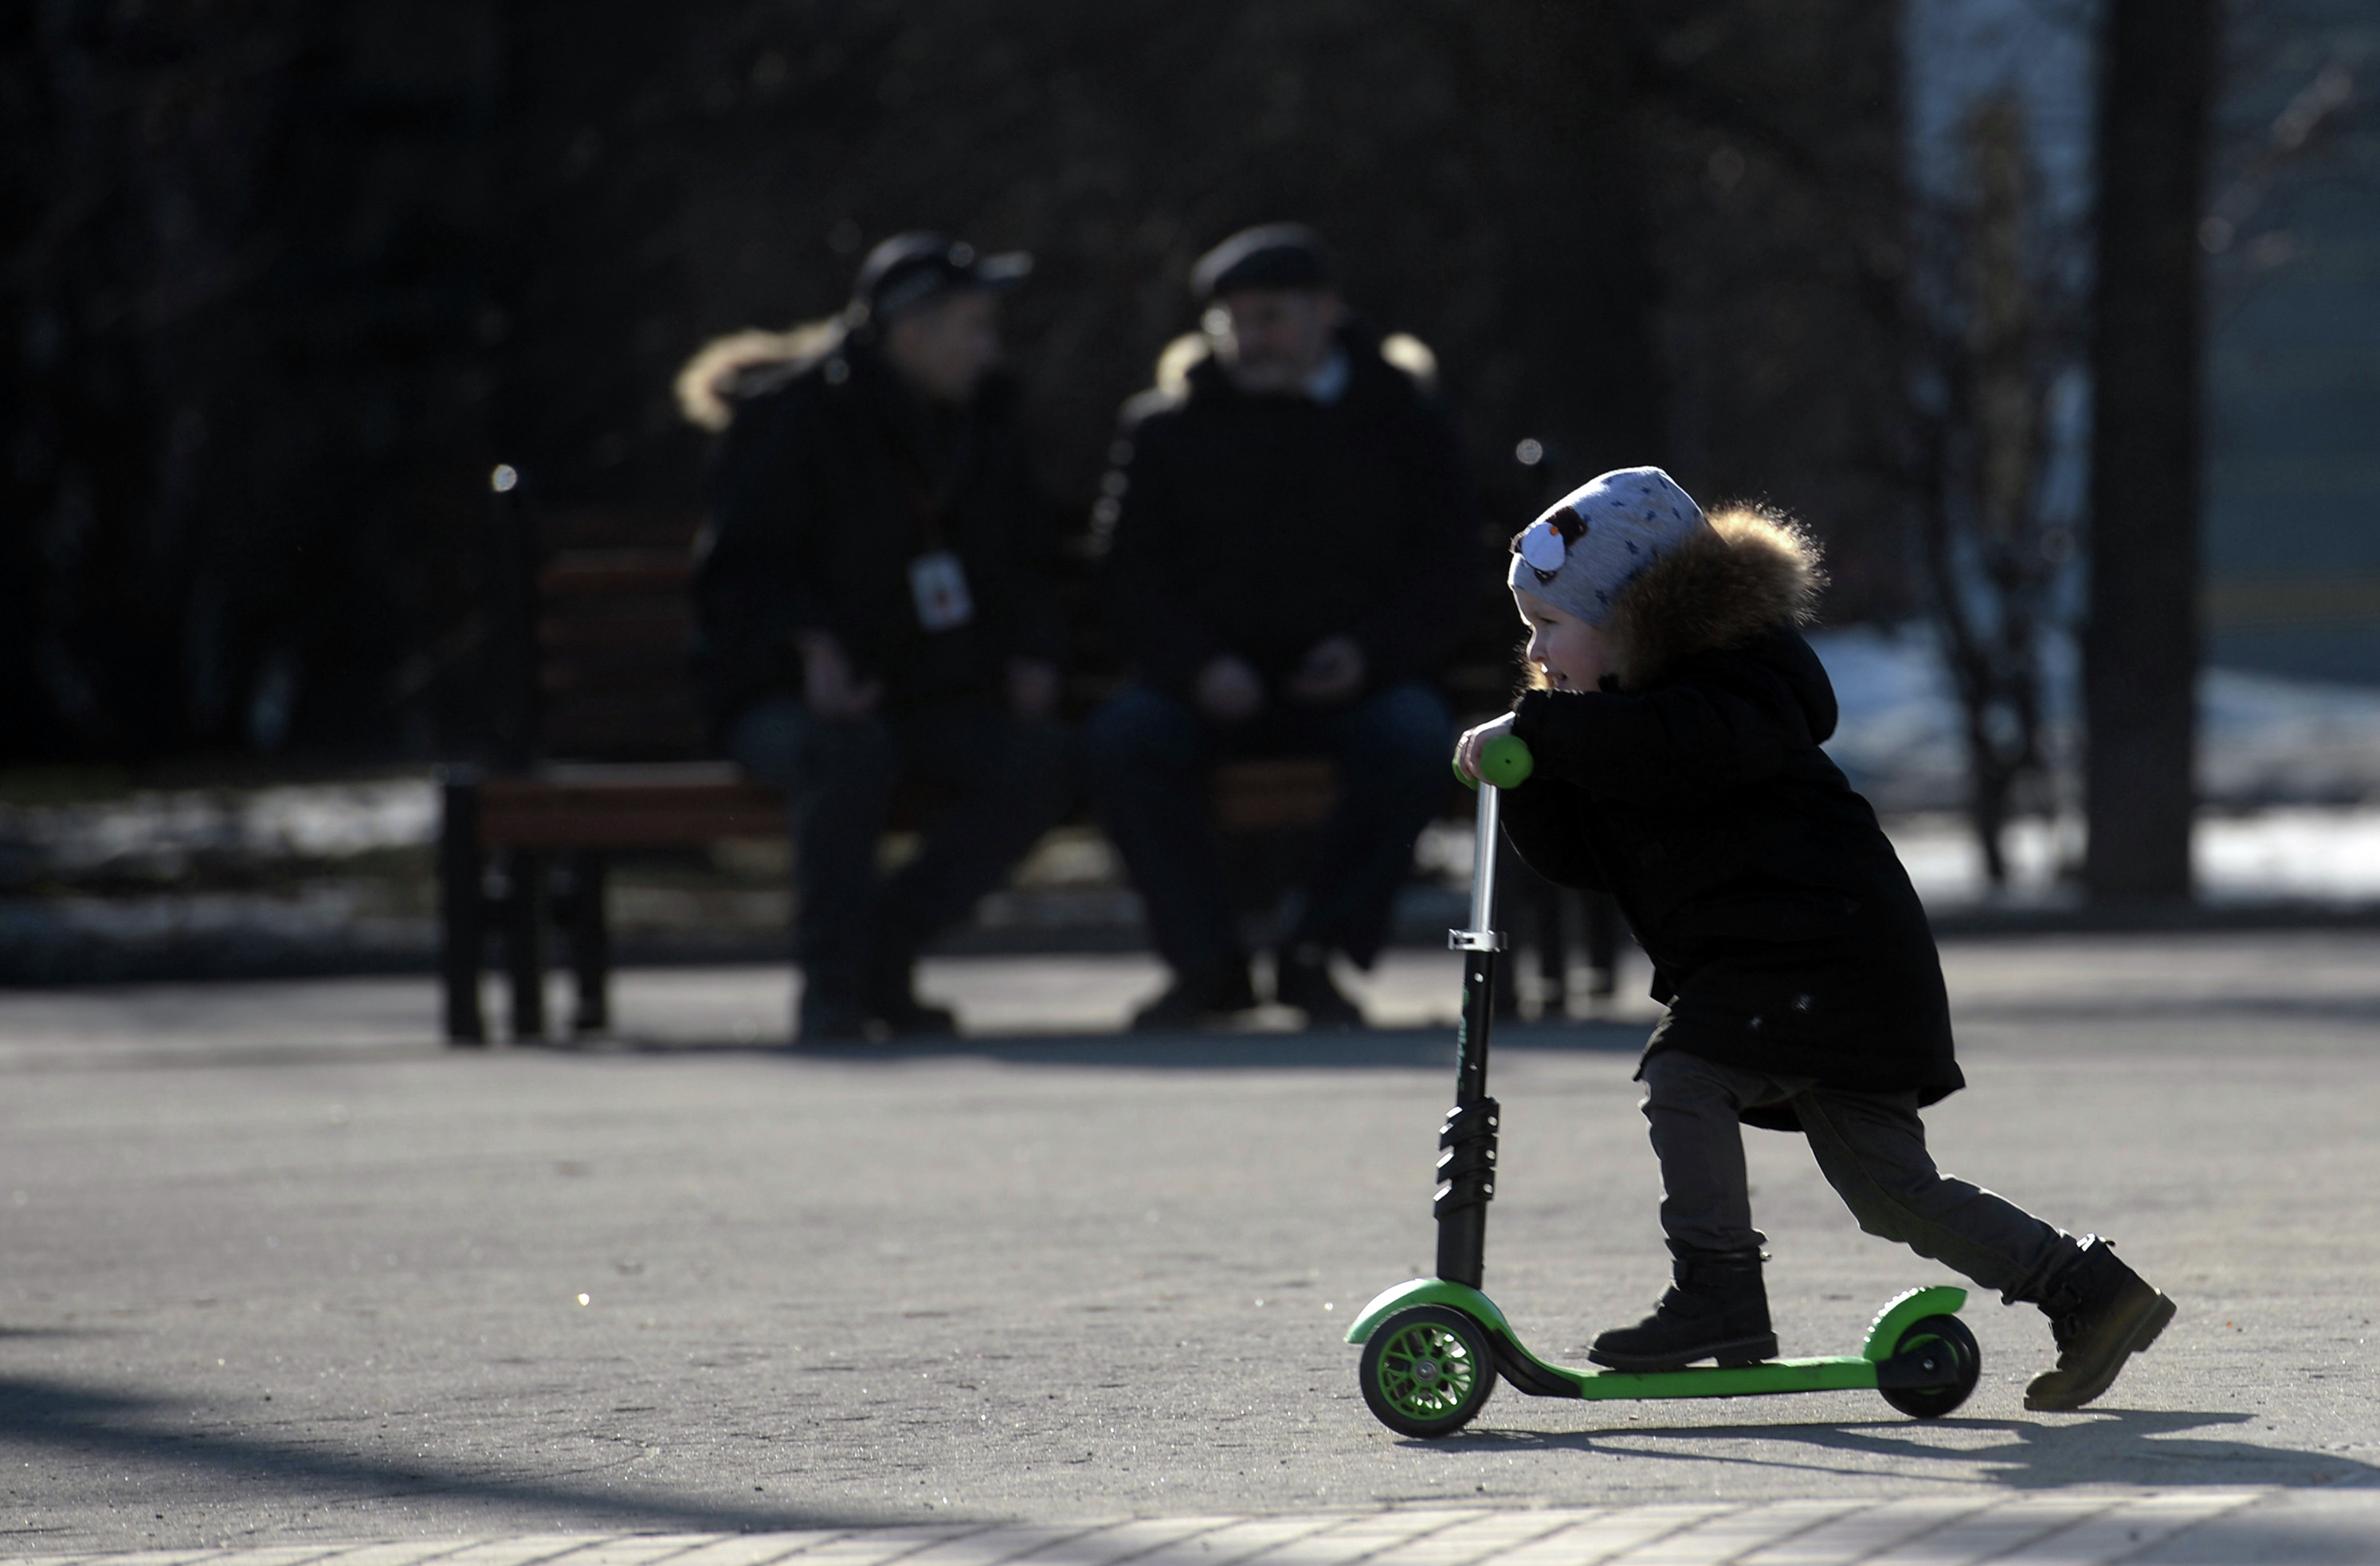 
Ребенок катается на самокате в парке "Сокольники" в Москве.&nbsp;
Фото:&nbsp;&copy;&nbsp;РИА Новости/Кирилл Калинников&nbsp;